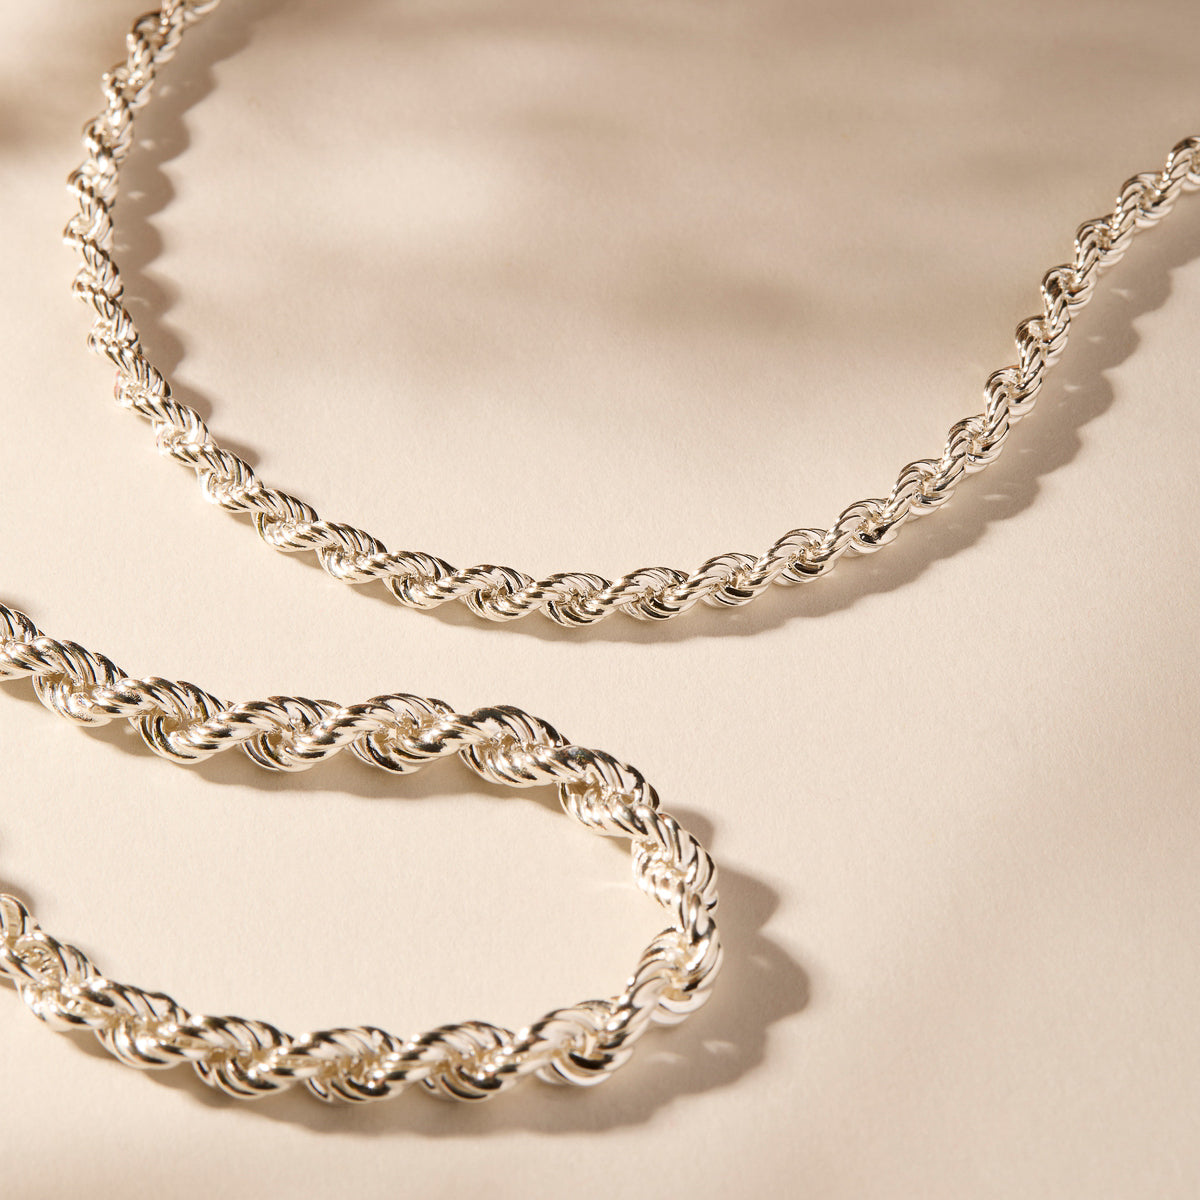 Najo Twine Silver Chain Necklace